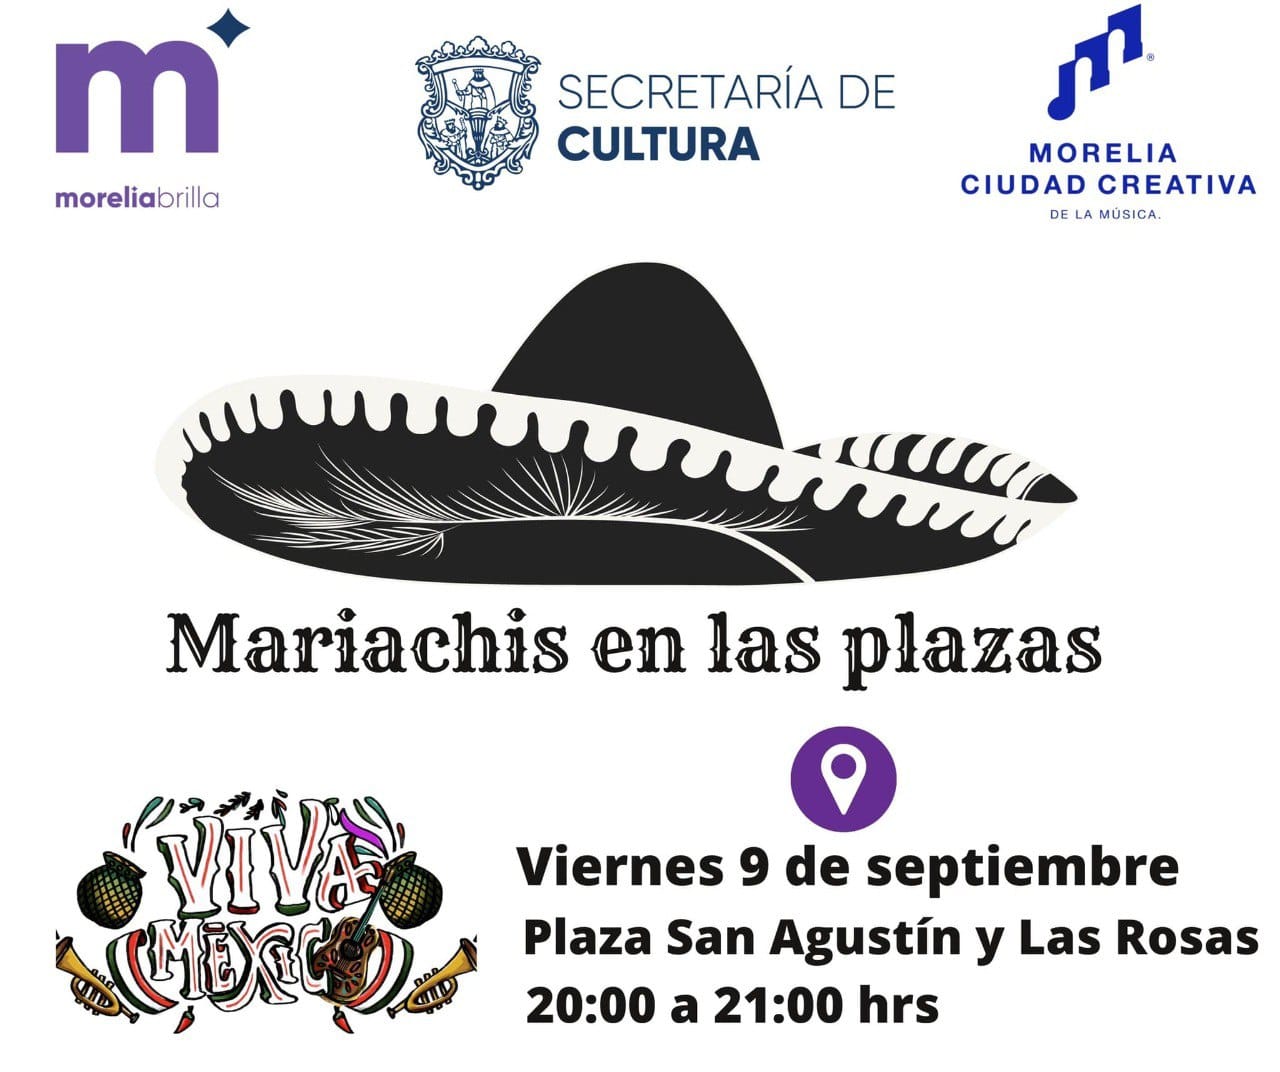 Este fin de semana, Morelia festejará al ritmo del mariachi